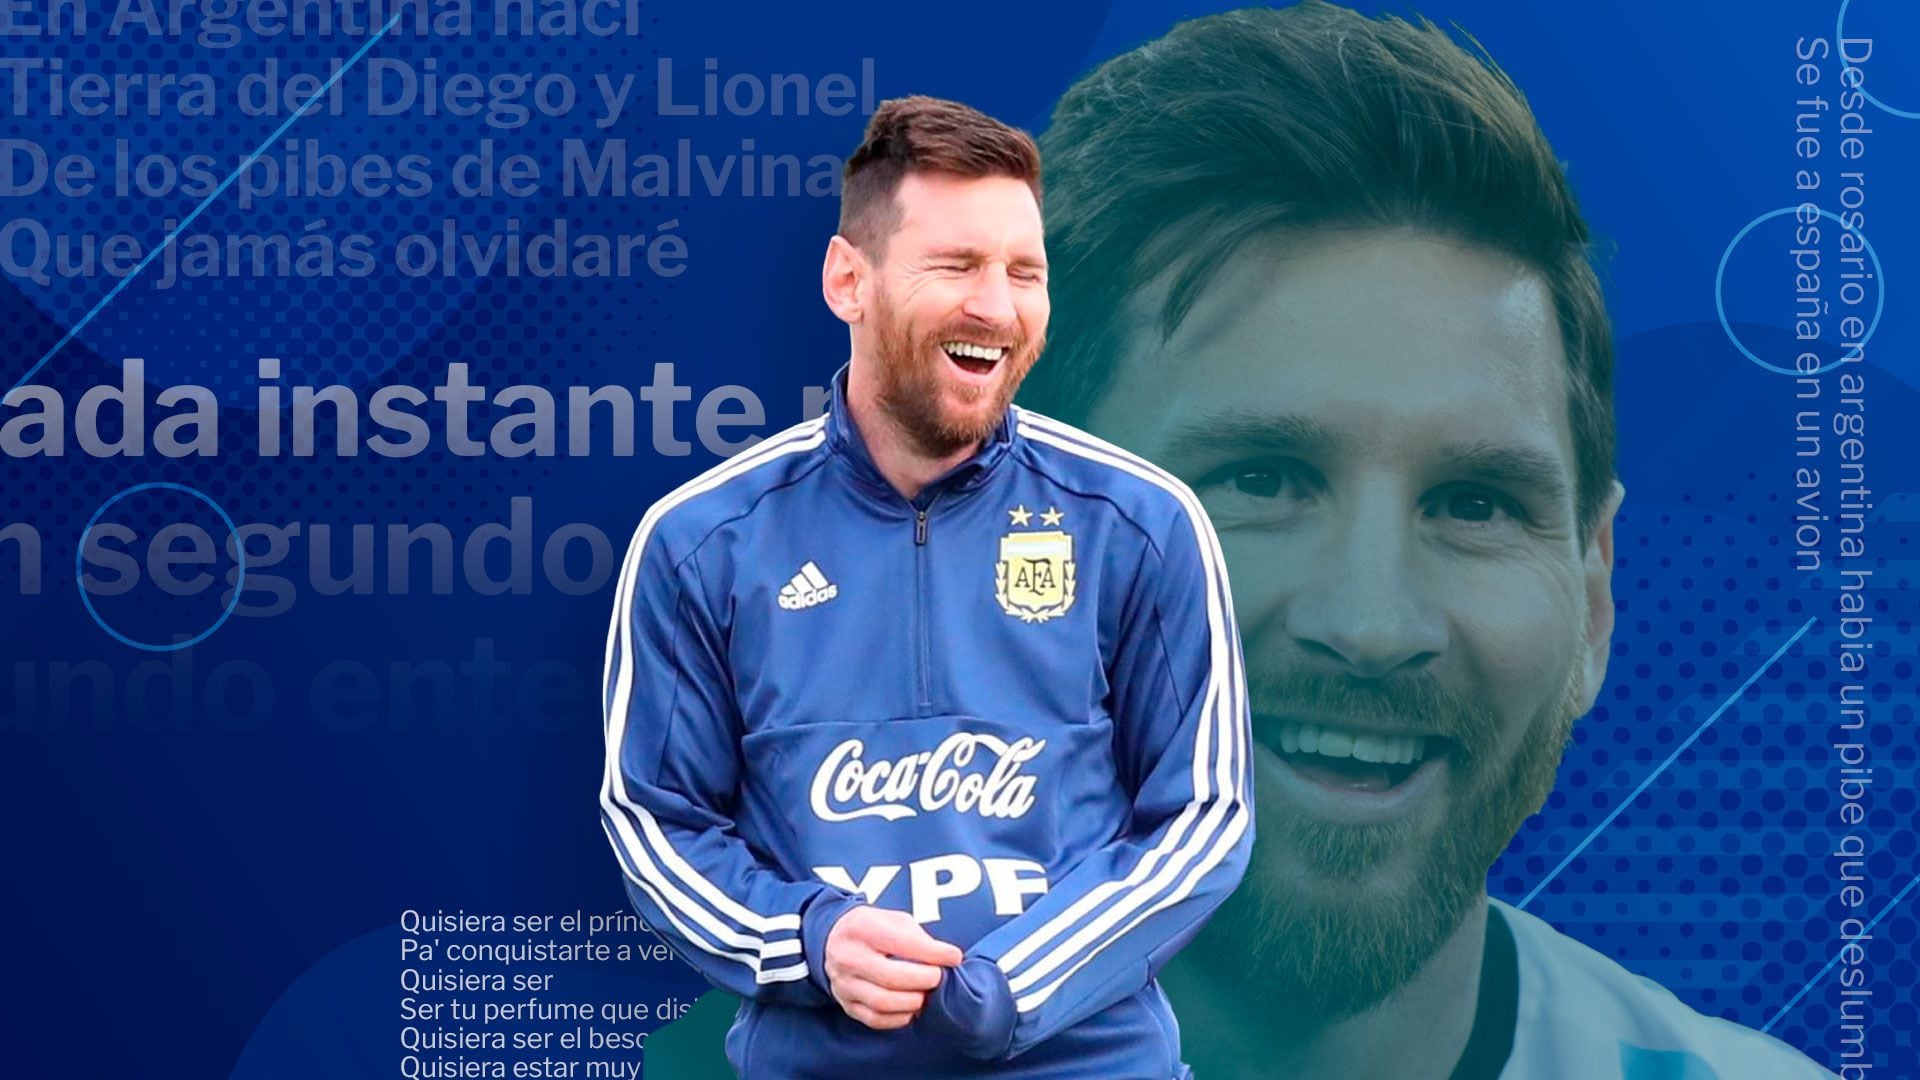 Muchas canciones han sido escritas sobre la vida y obra de Lionel Messi. Recopilamos 10 de las más emblemáticas
Foto: Jovani Pérez